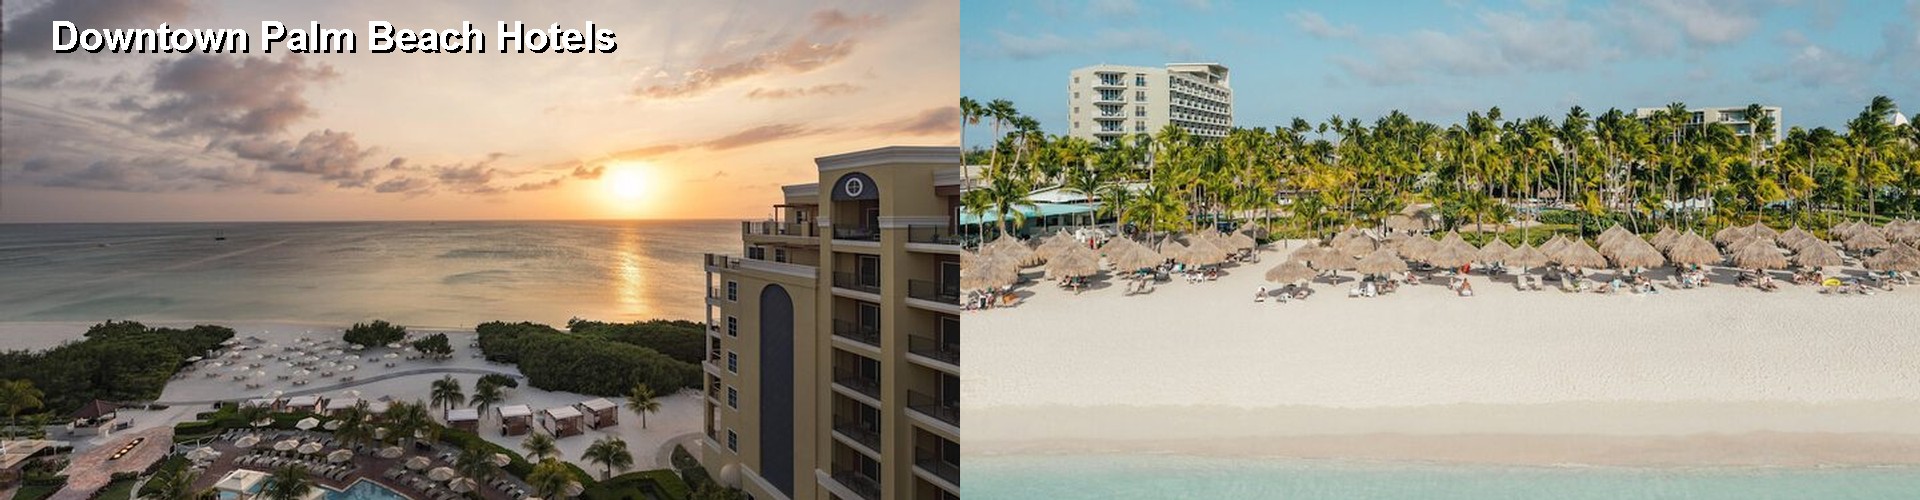 5 Best Hotels near Downtown Palm Beach